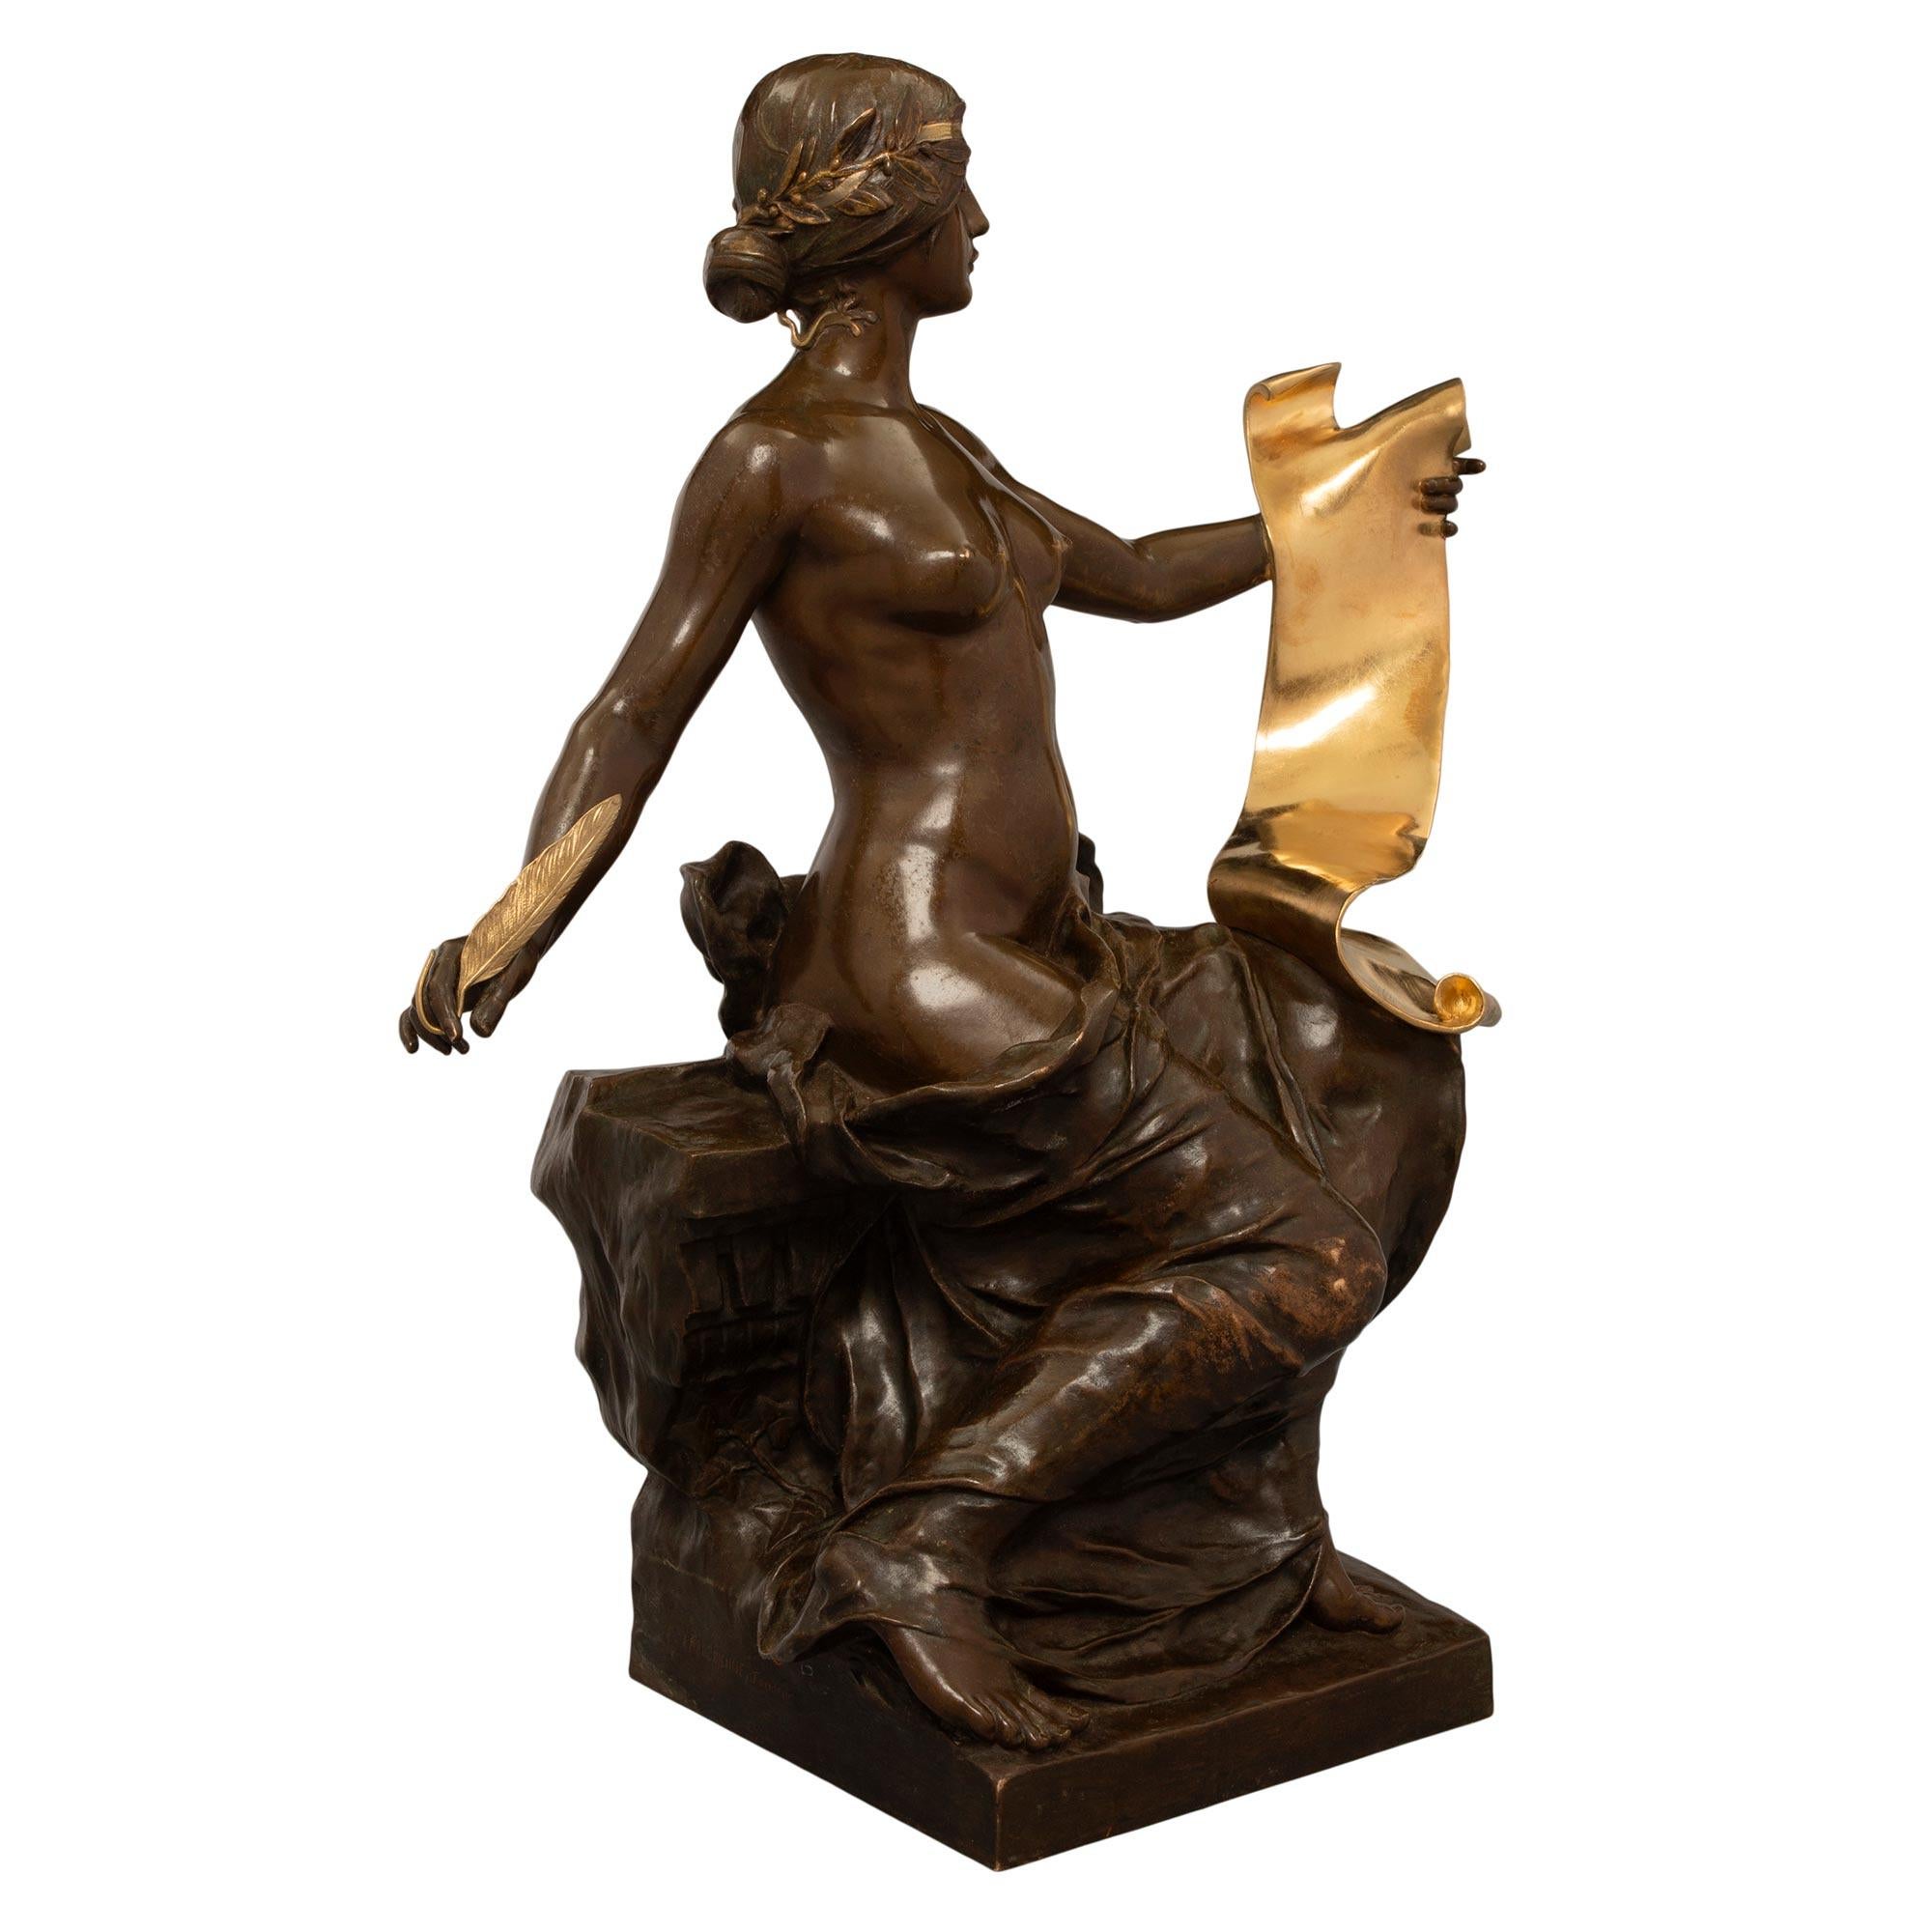 Belle statue française du 19ème siècle, de style Louis XVI, en bronze patiné et bronze doré, représentant l'Allégorie de l'Histoire par Georges Bareau et F. Barbedienne. Cette statue 